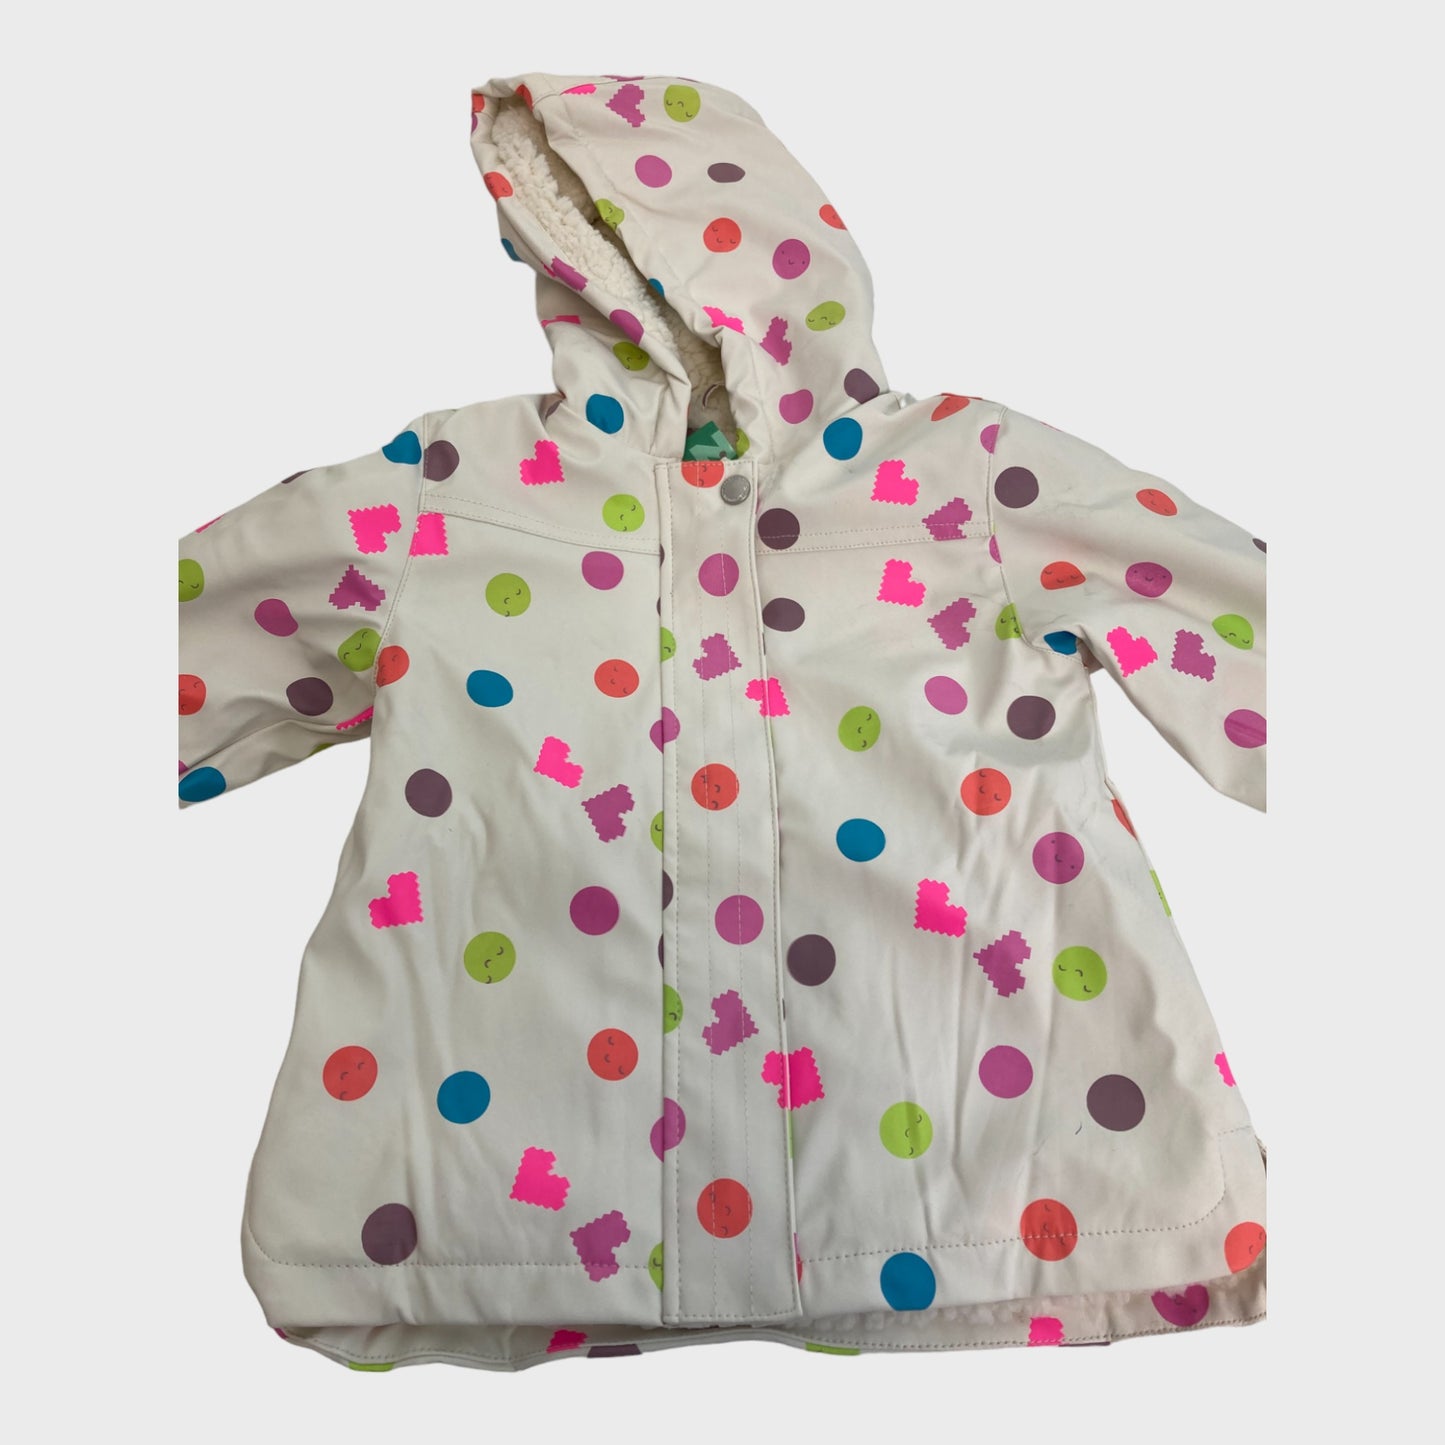 Girls White Spot/Heart Patterned Raincoat